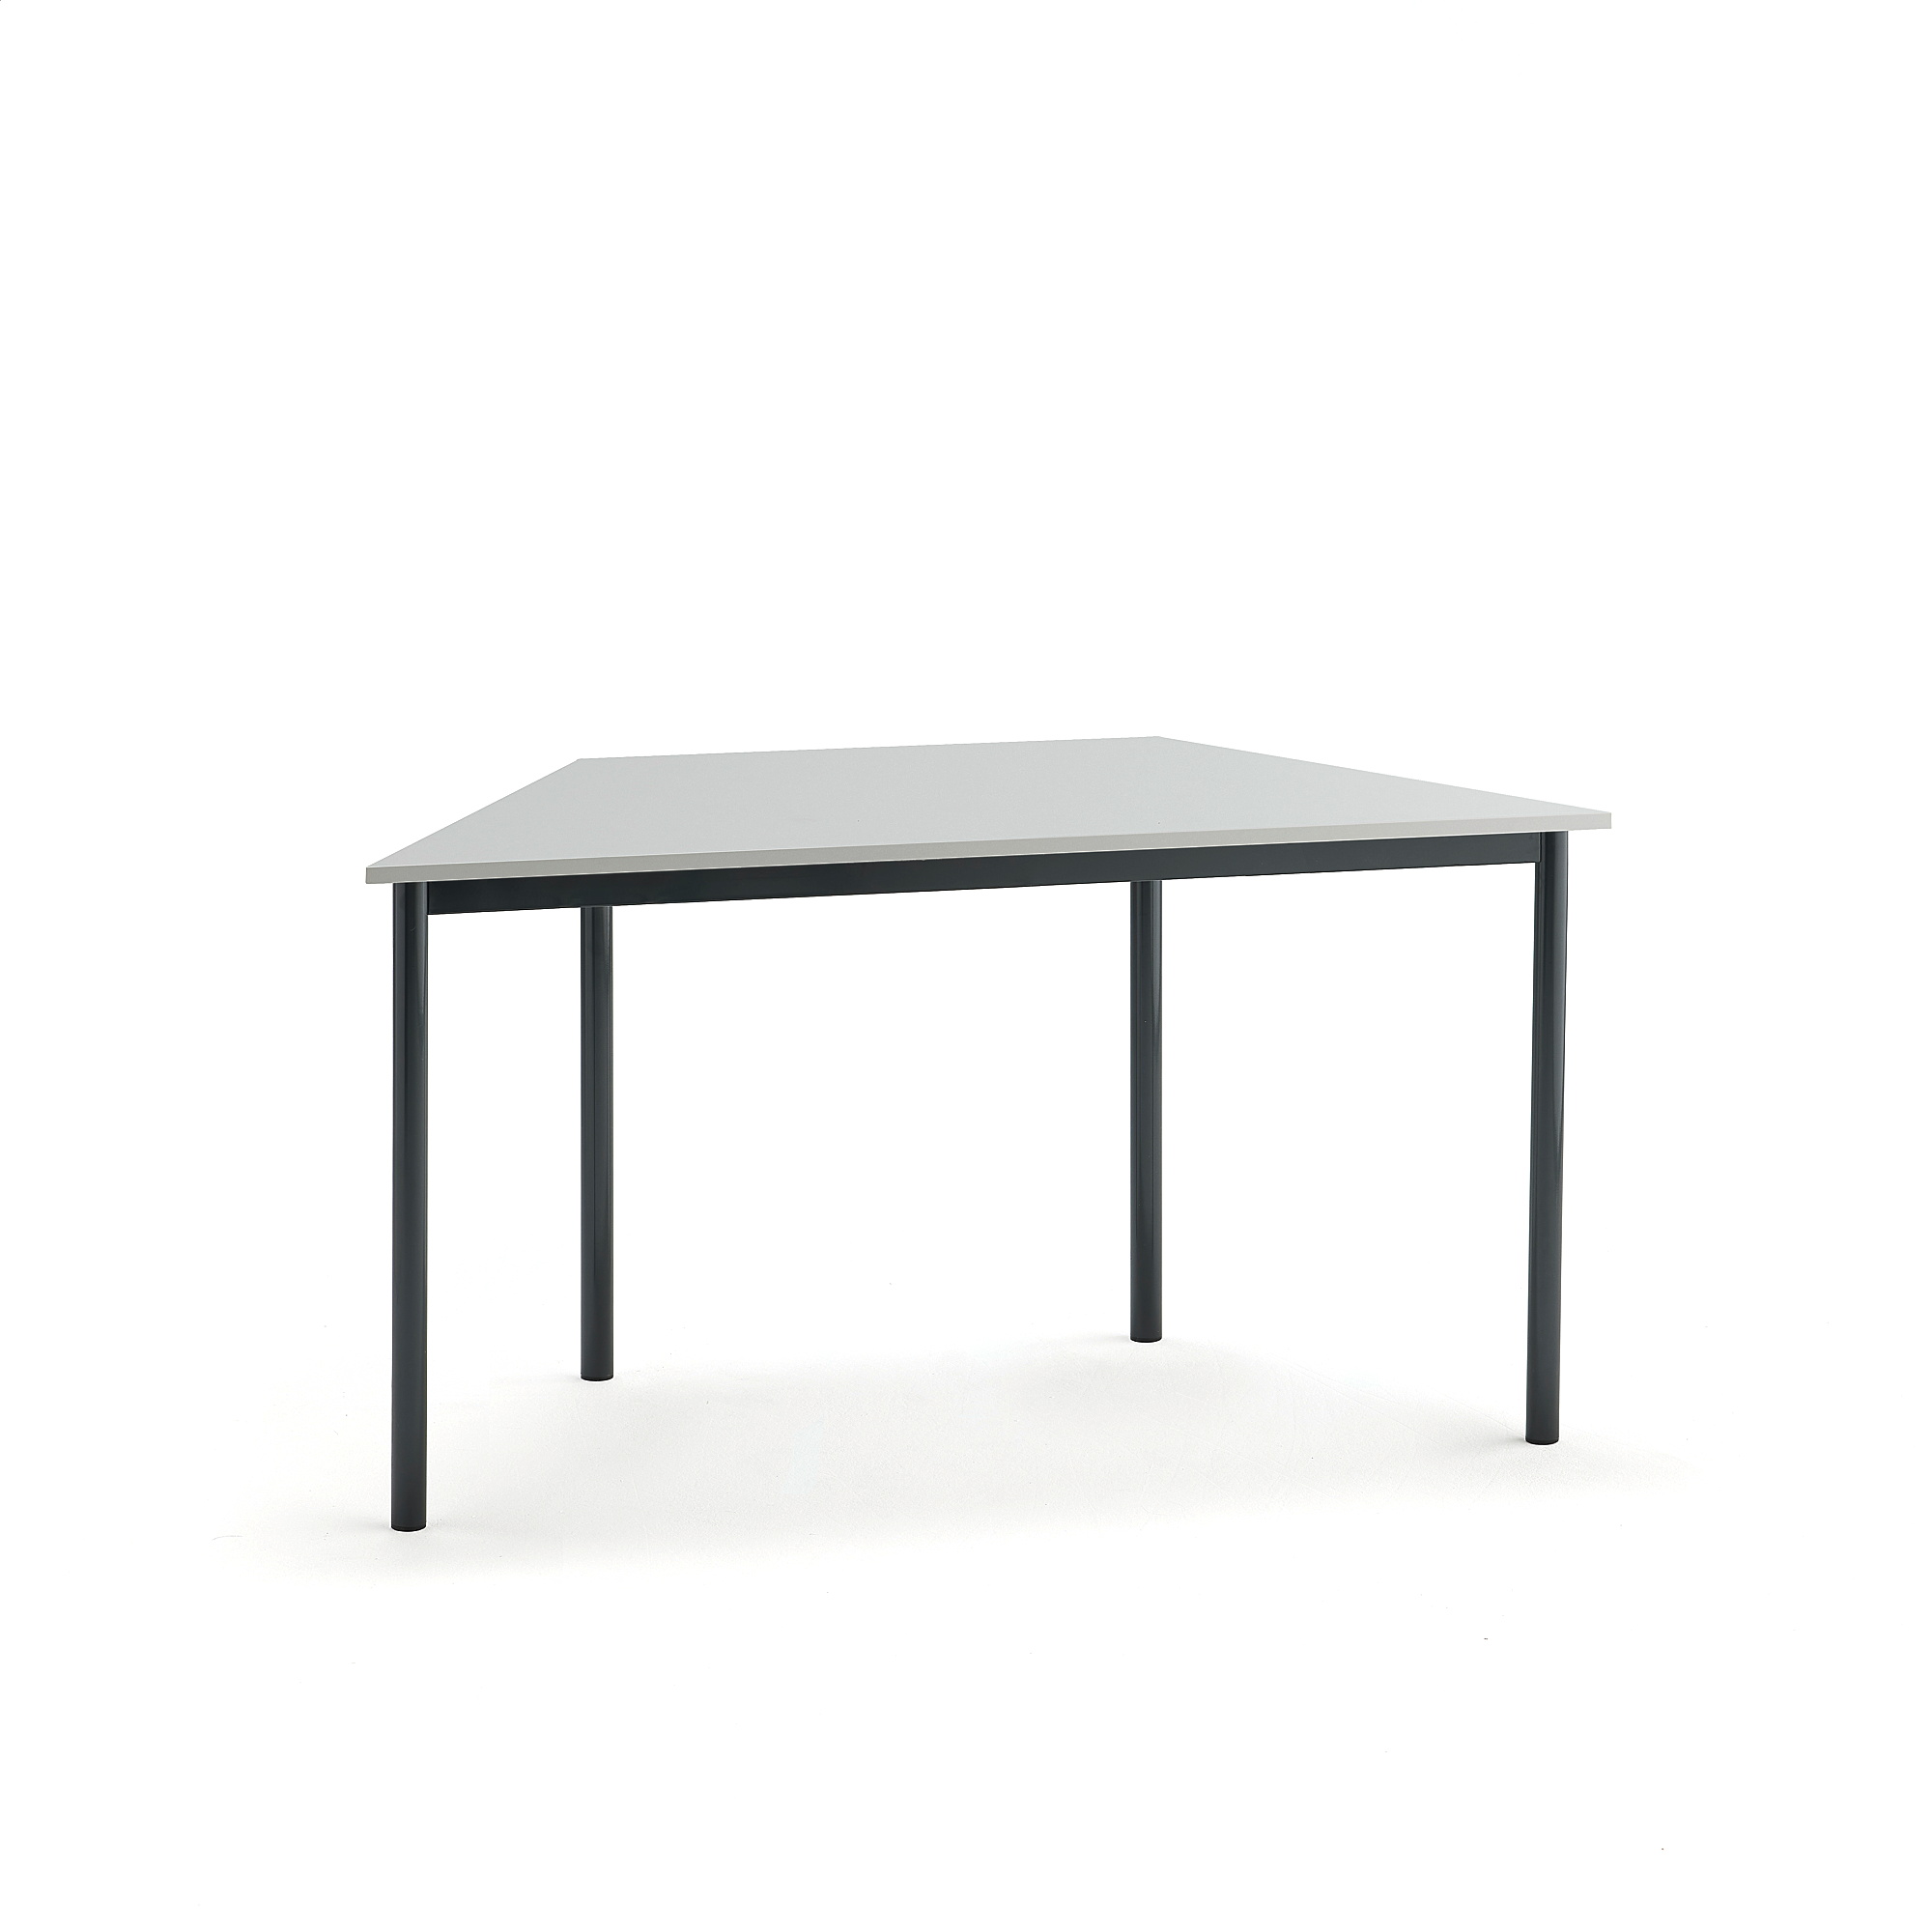 Stůl BORÅS TRAPETS, 1400x700x720 mm, antracitově šedé nohy, HPL deska, šedá